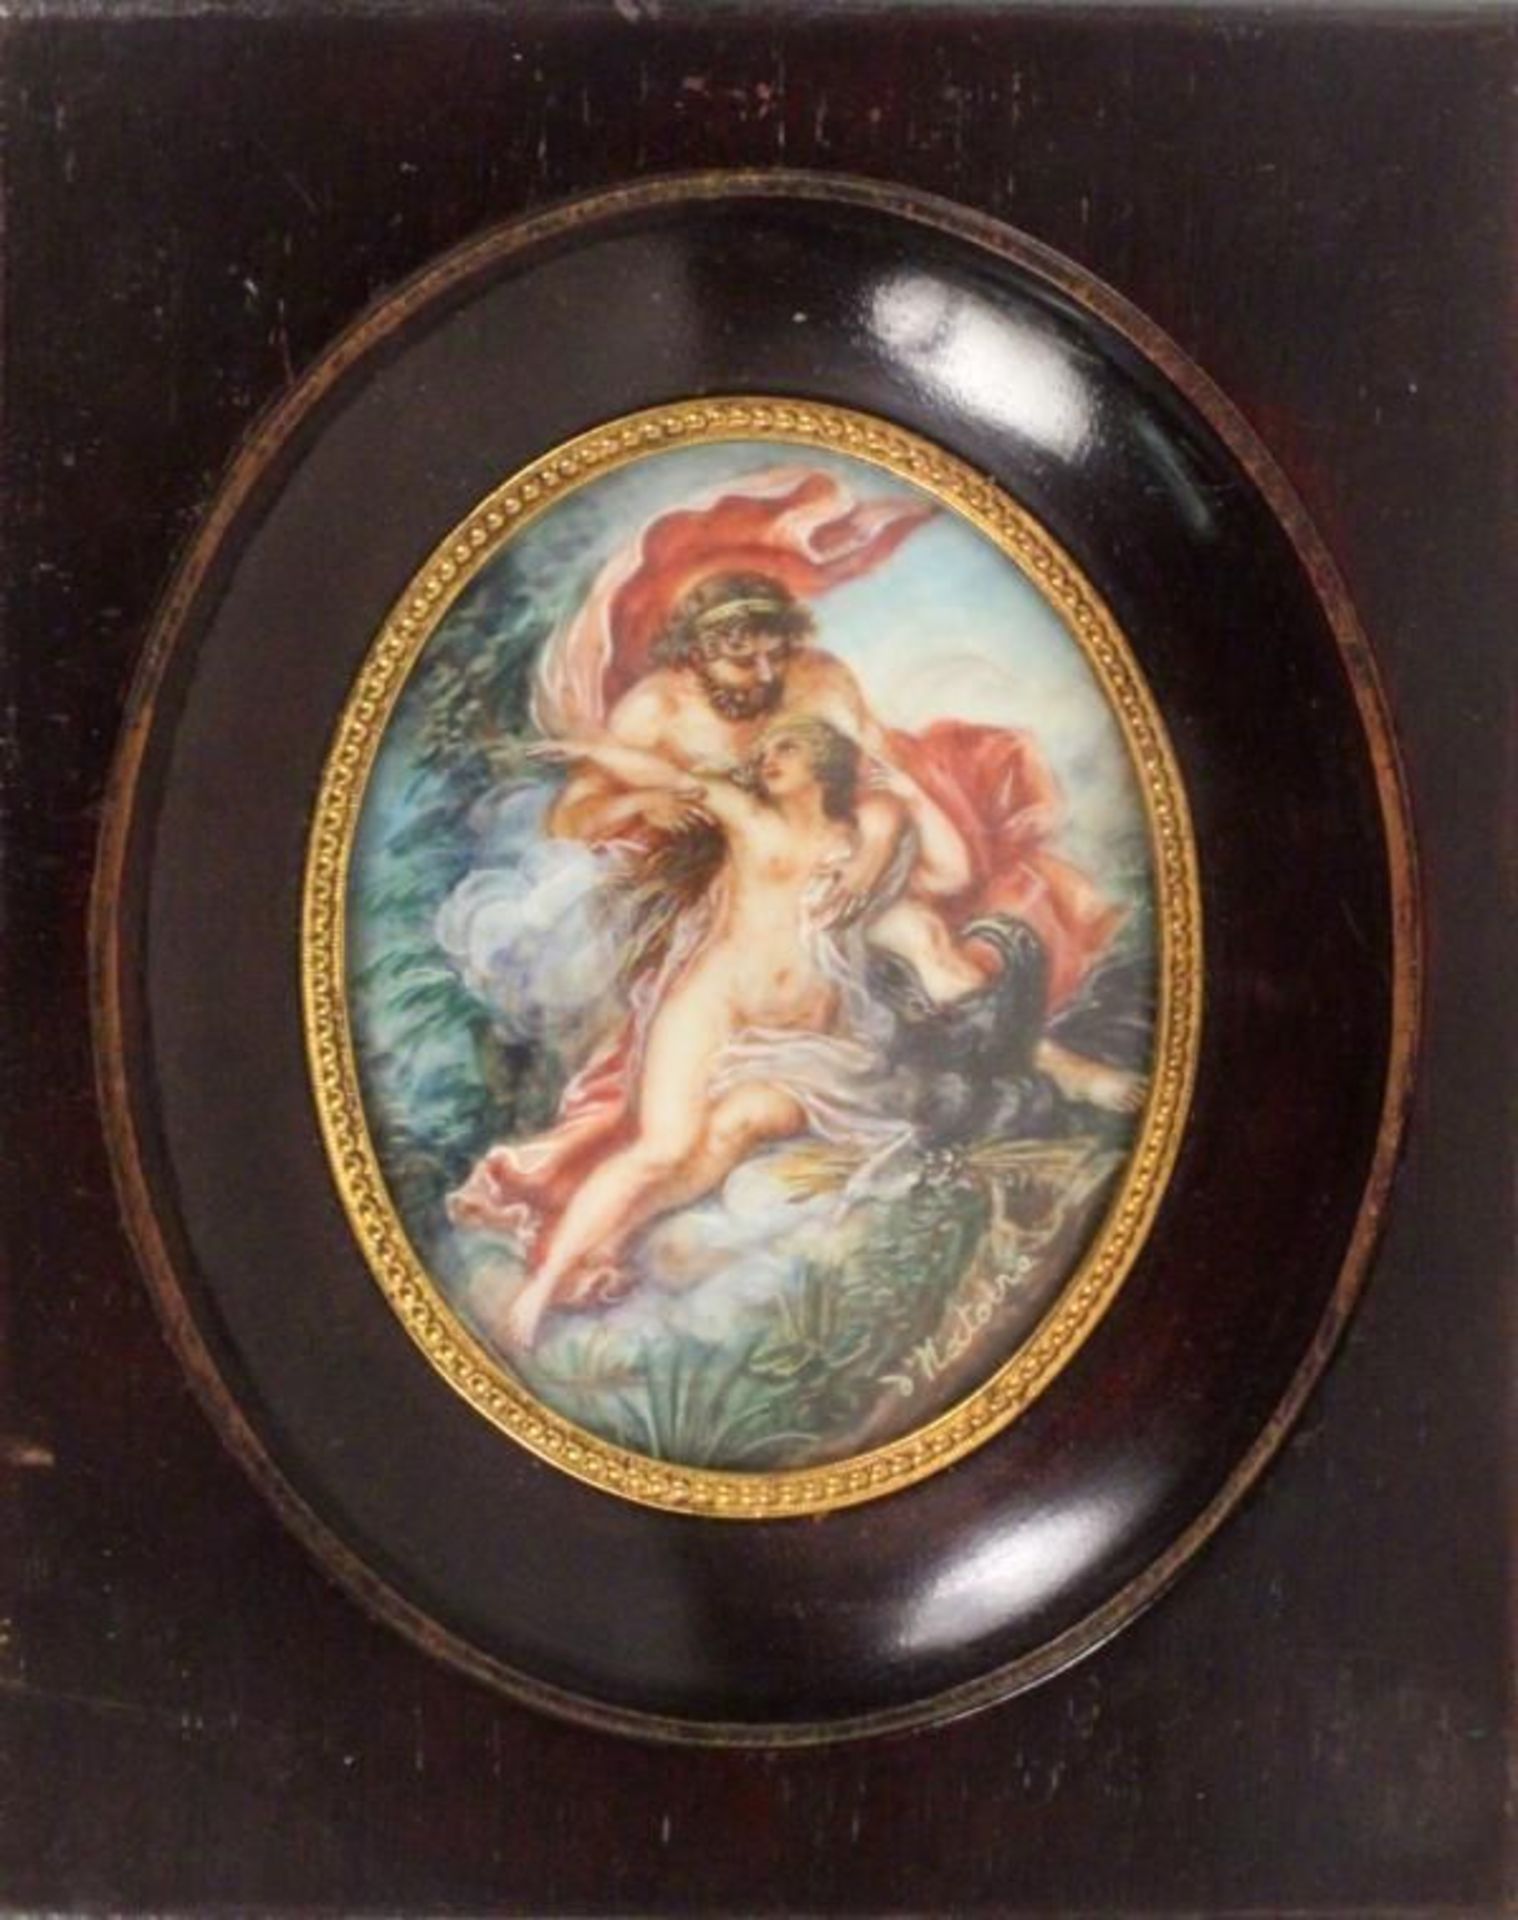 A MINIATURE after Charles-Joseph Natoire (Nîmes 1700-1777 Castel Gandolfo) ''Io enlevé par Jupiter''